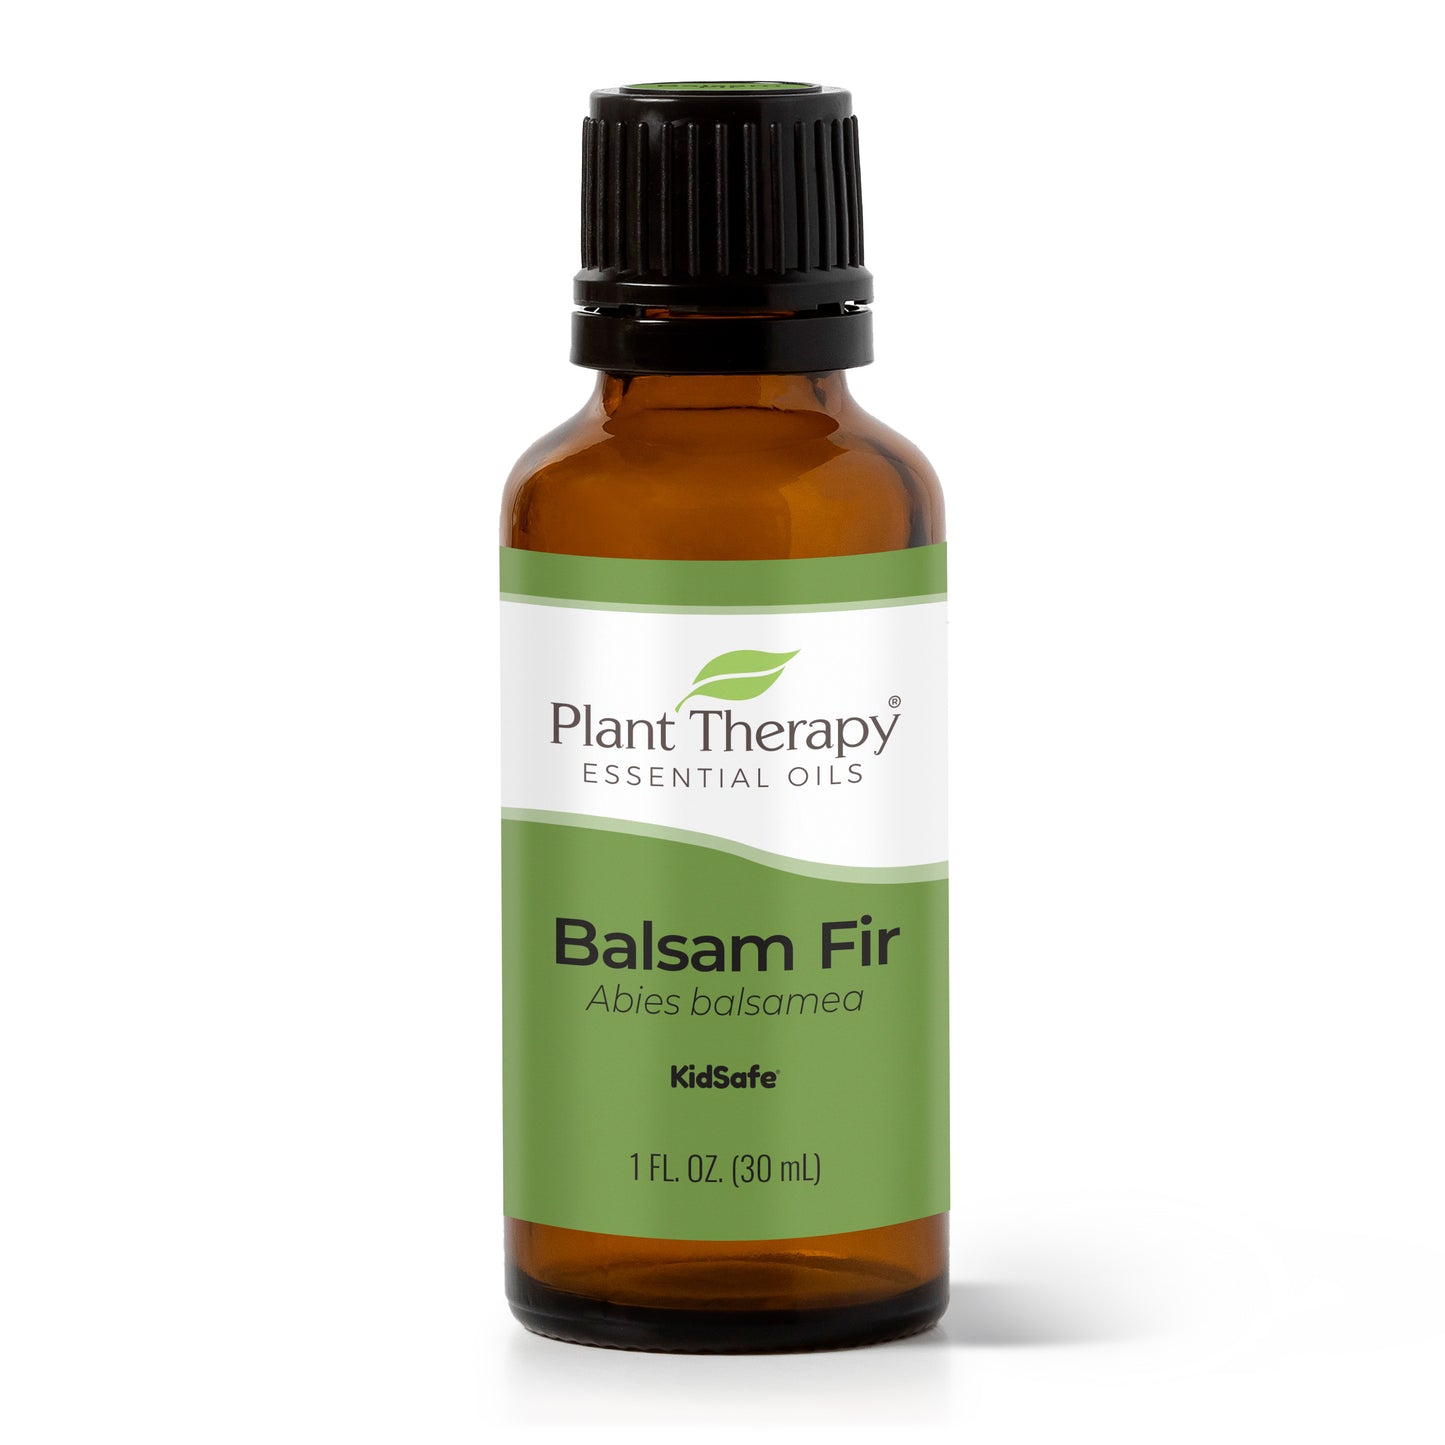 Balsam Fir Essential Oil 30 mL bottle